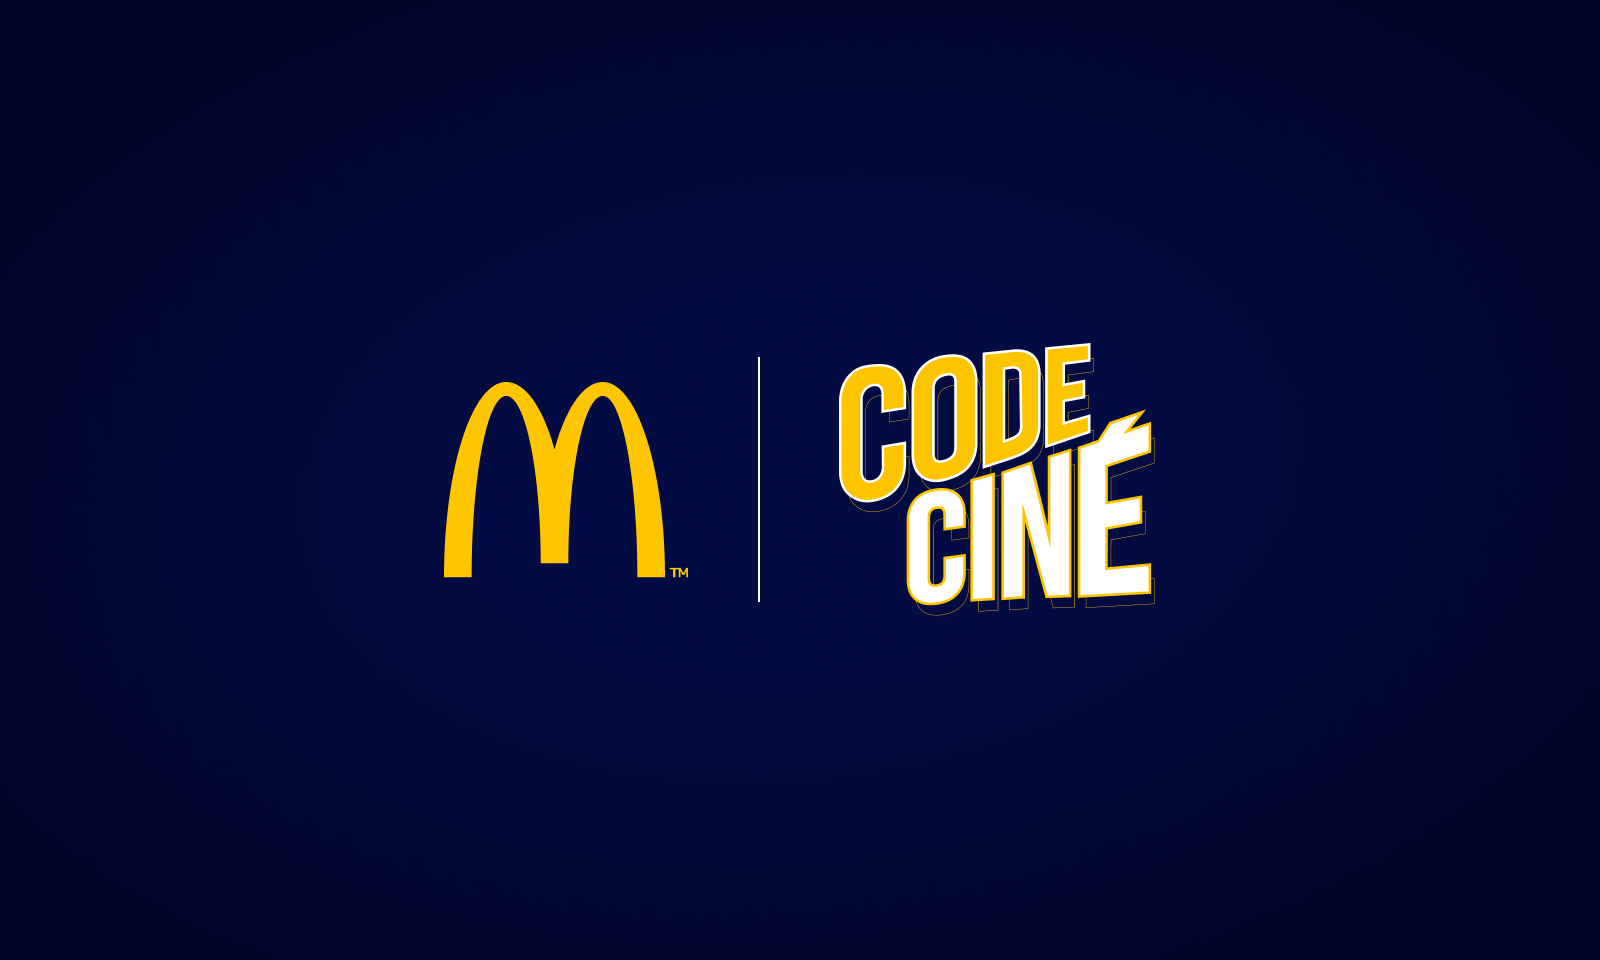 McDonalds Codecine